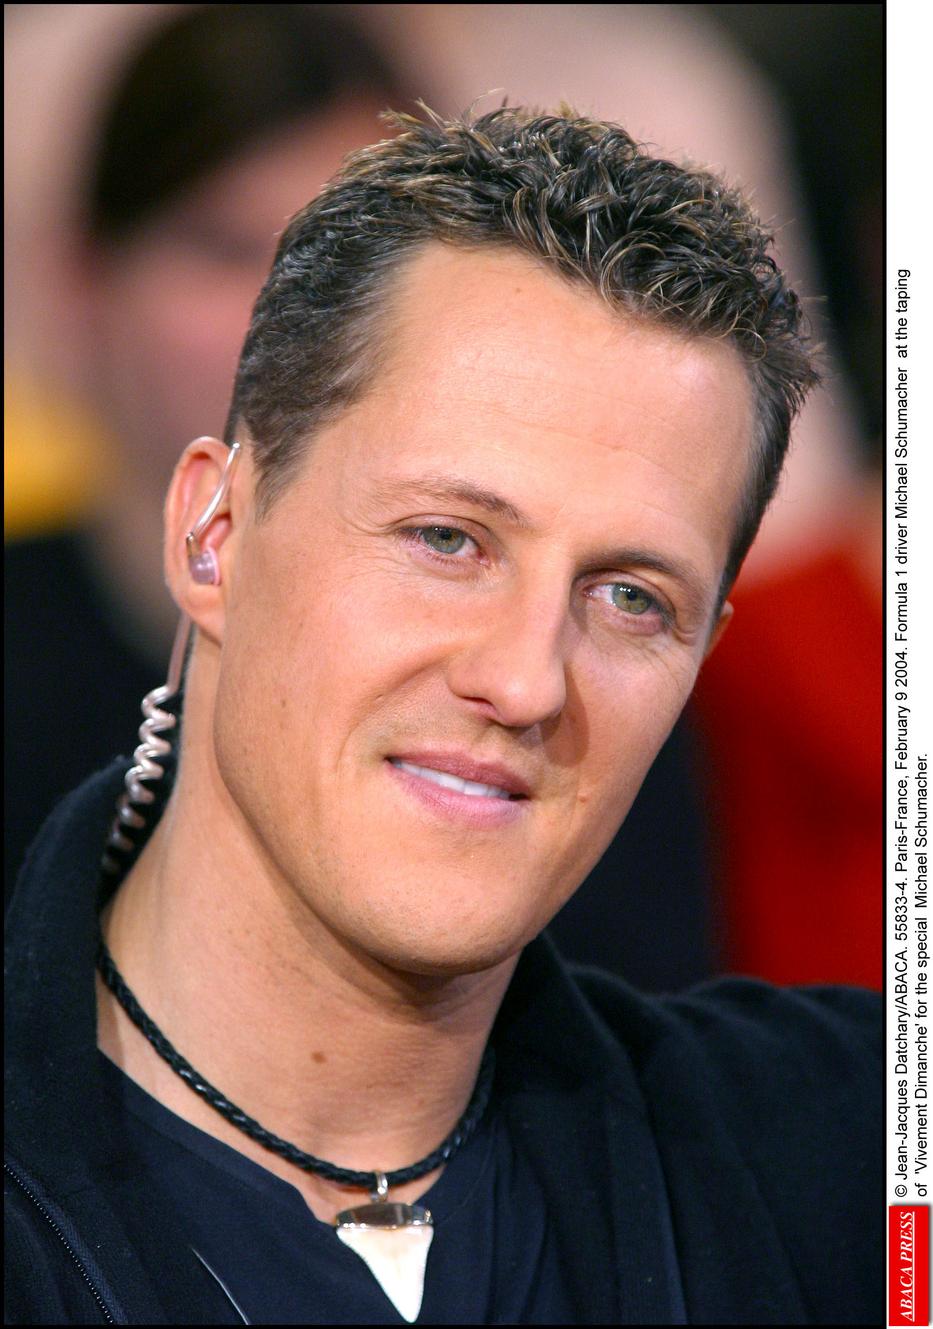 Michael Schumacher állapotáról nem túl sok jót mondott a barátja. Fotó: Northfoto